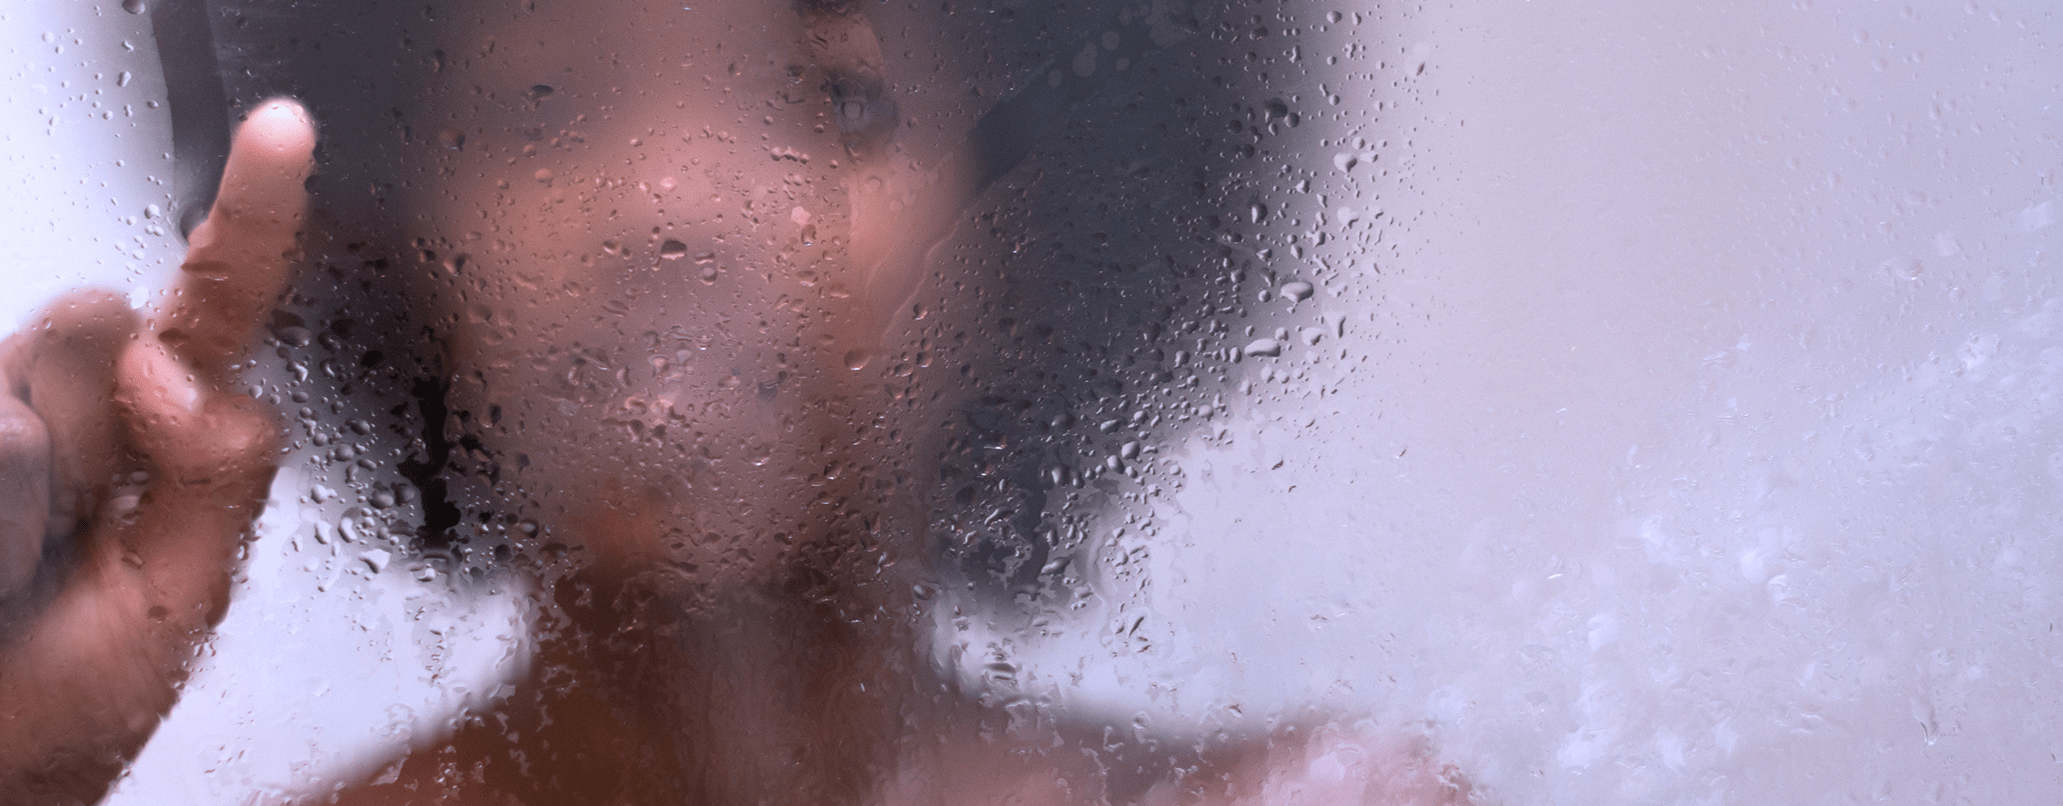 woman-behind-glass-shower-door-header